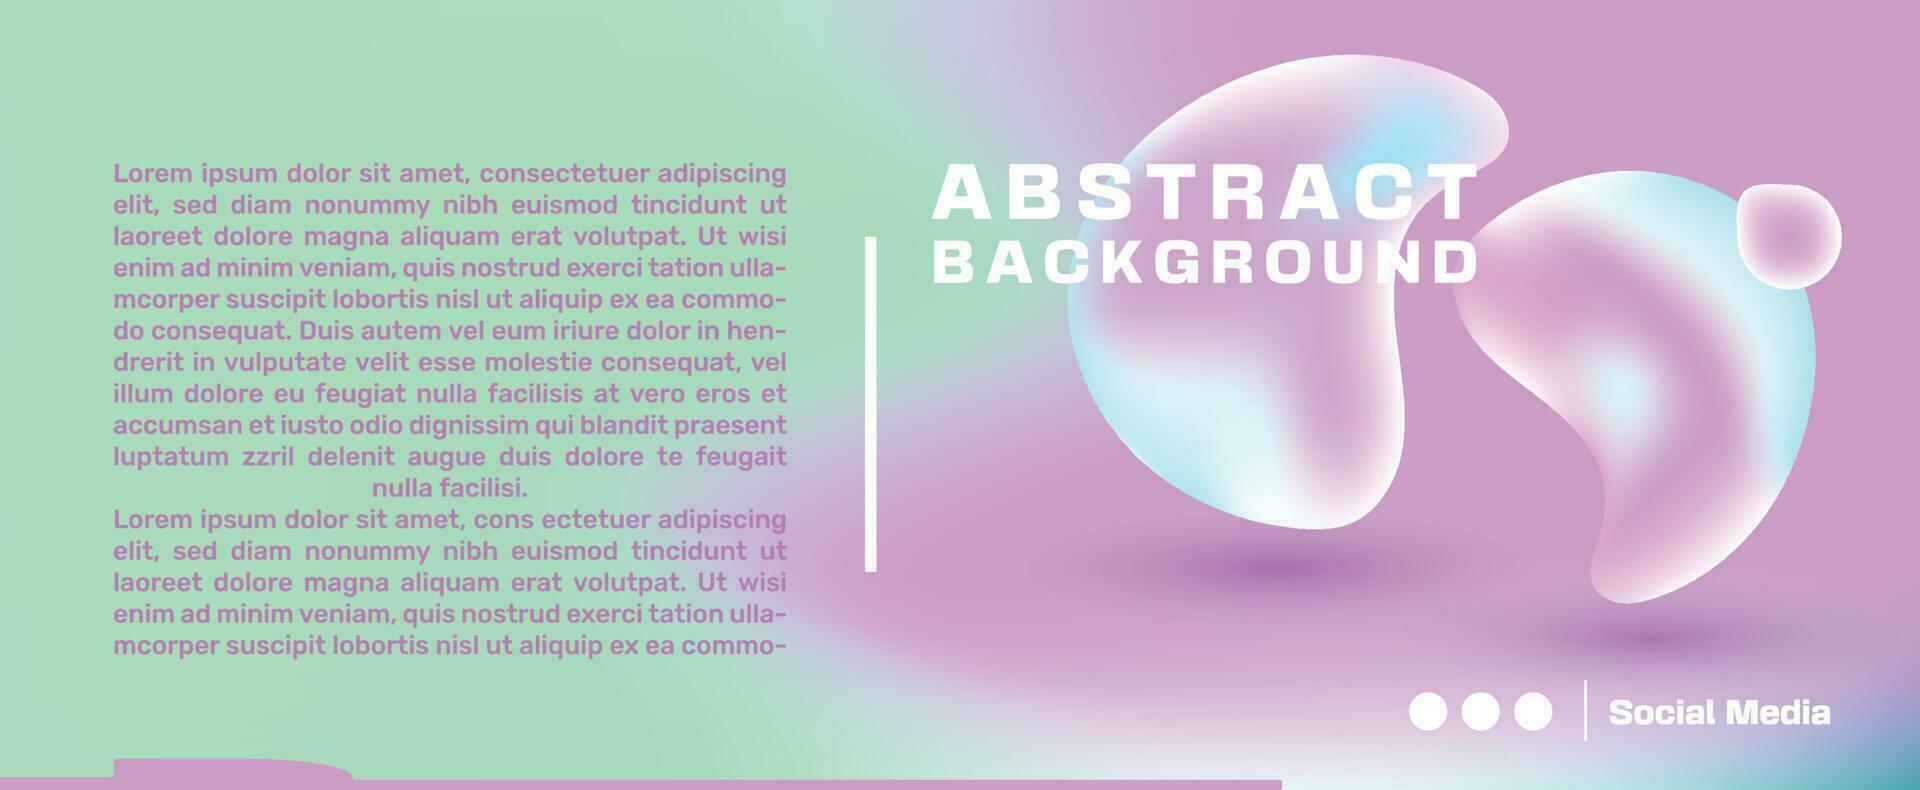 abstrakt trendig maska bakgrund rosa och grön med abstrakt former bäst för medicinsk, social media affisch användare gränssnitt av hemsida vektor